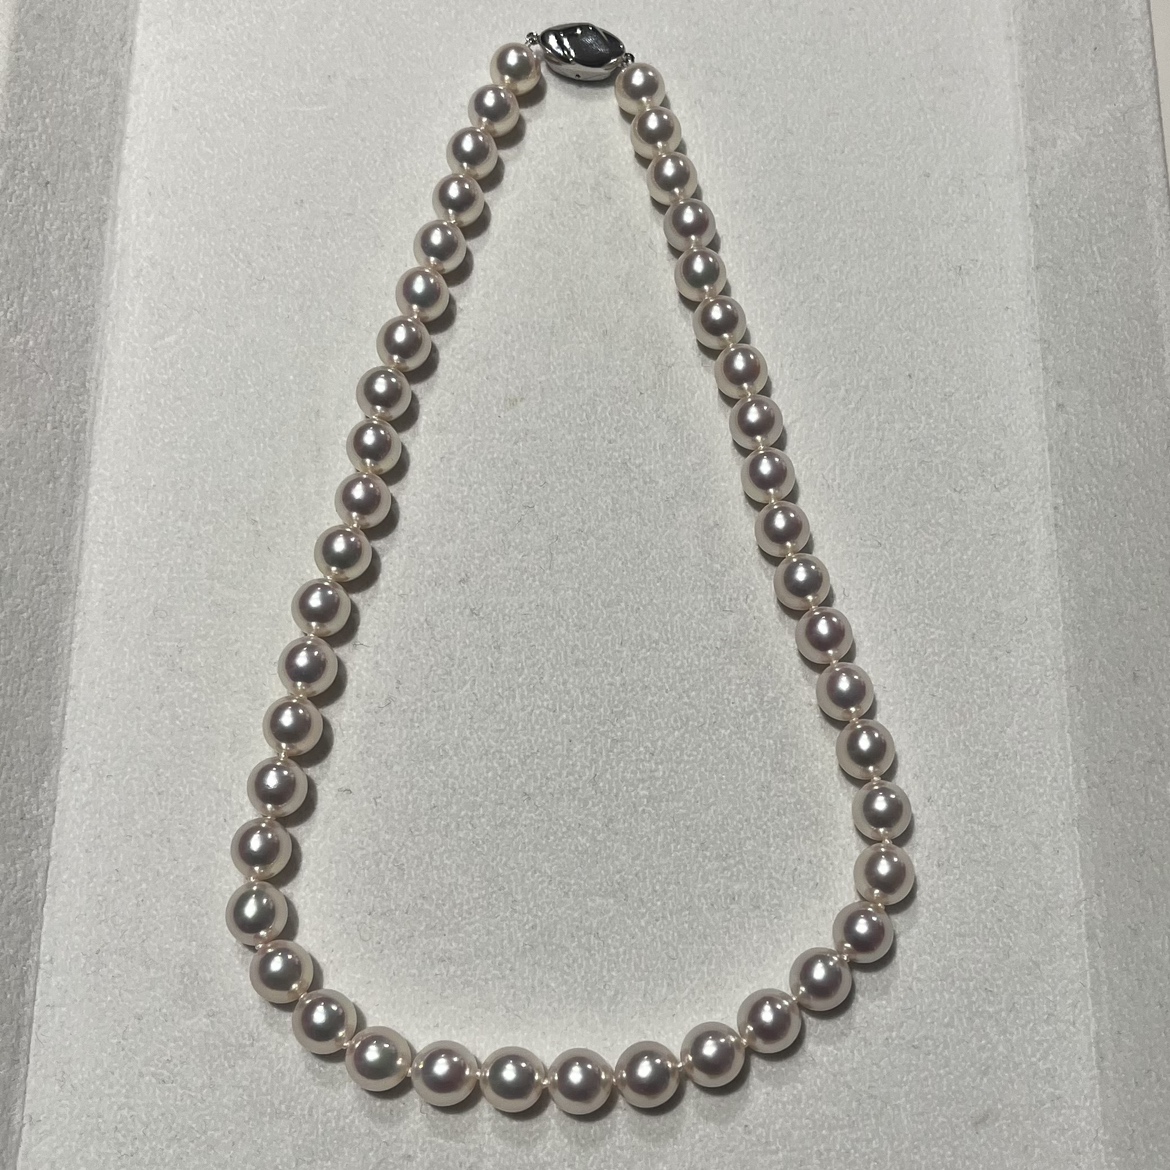 パール・真珠の925 オーロラ天女鑑定書付き・真珠科学研究所 アコヤ真珠 9mmパールネックレス 44粒の買取実績です。